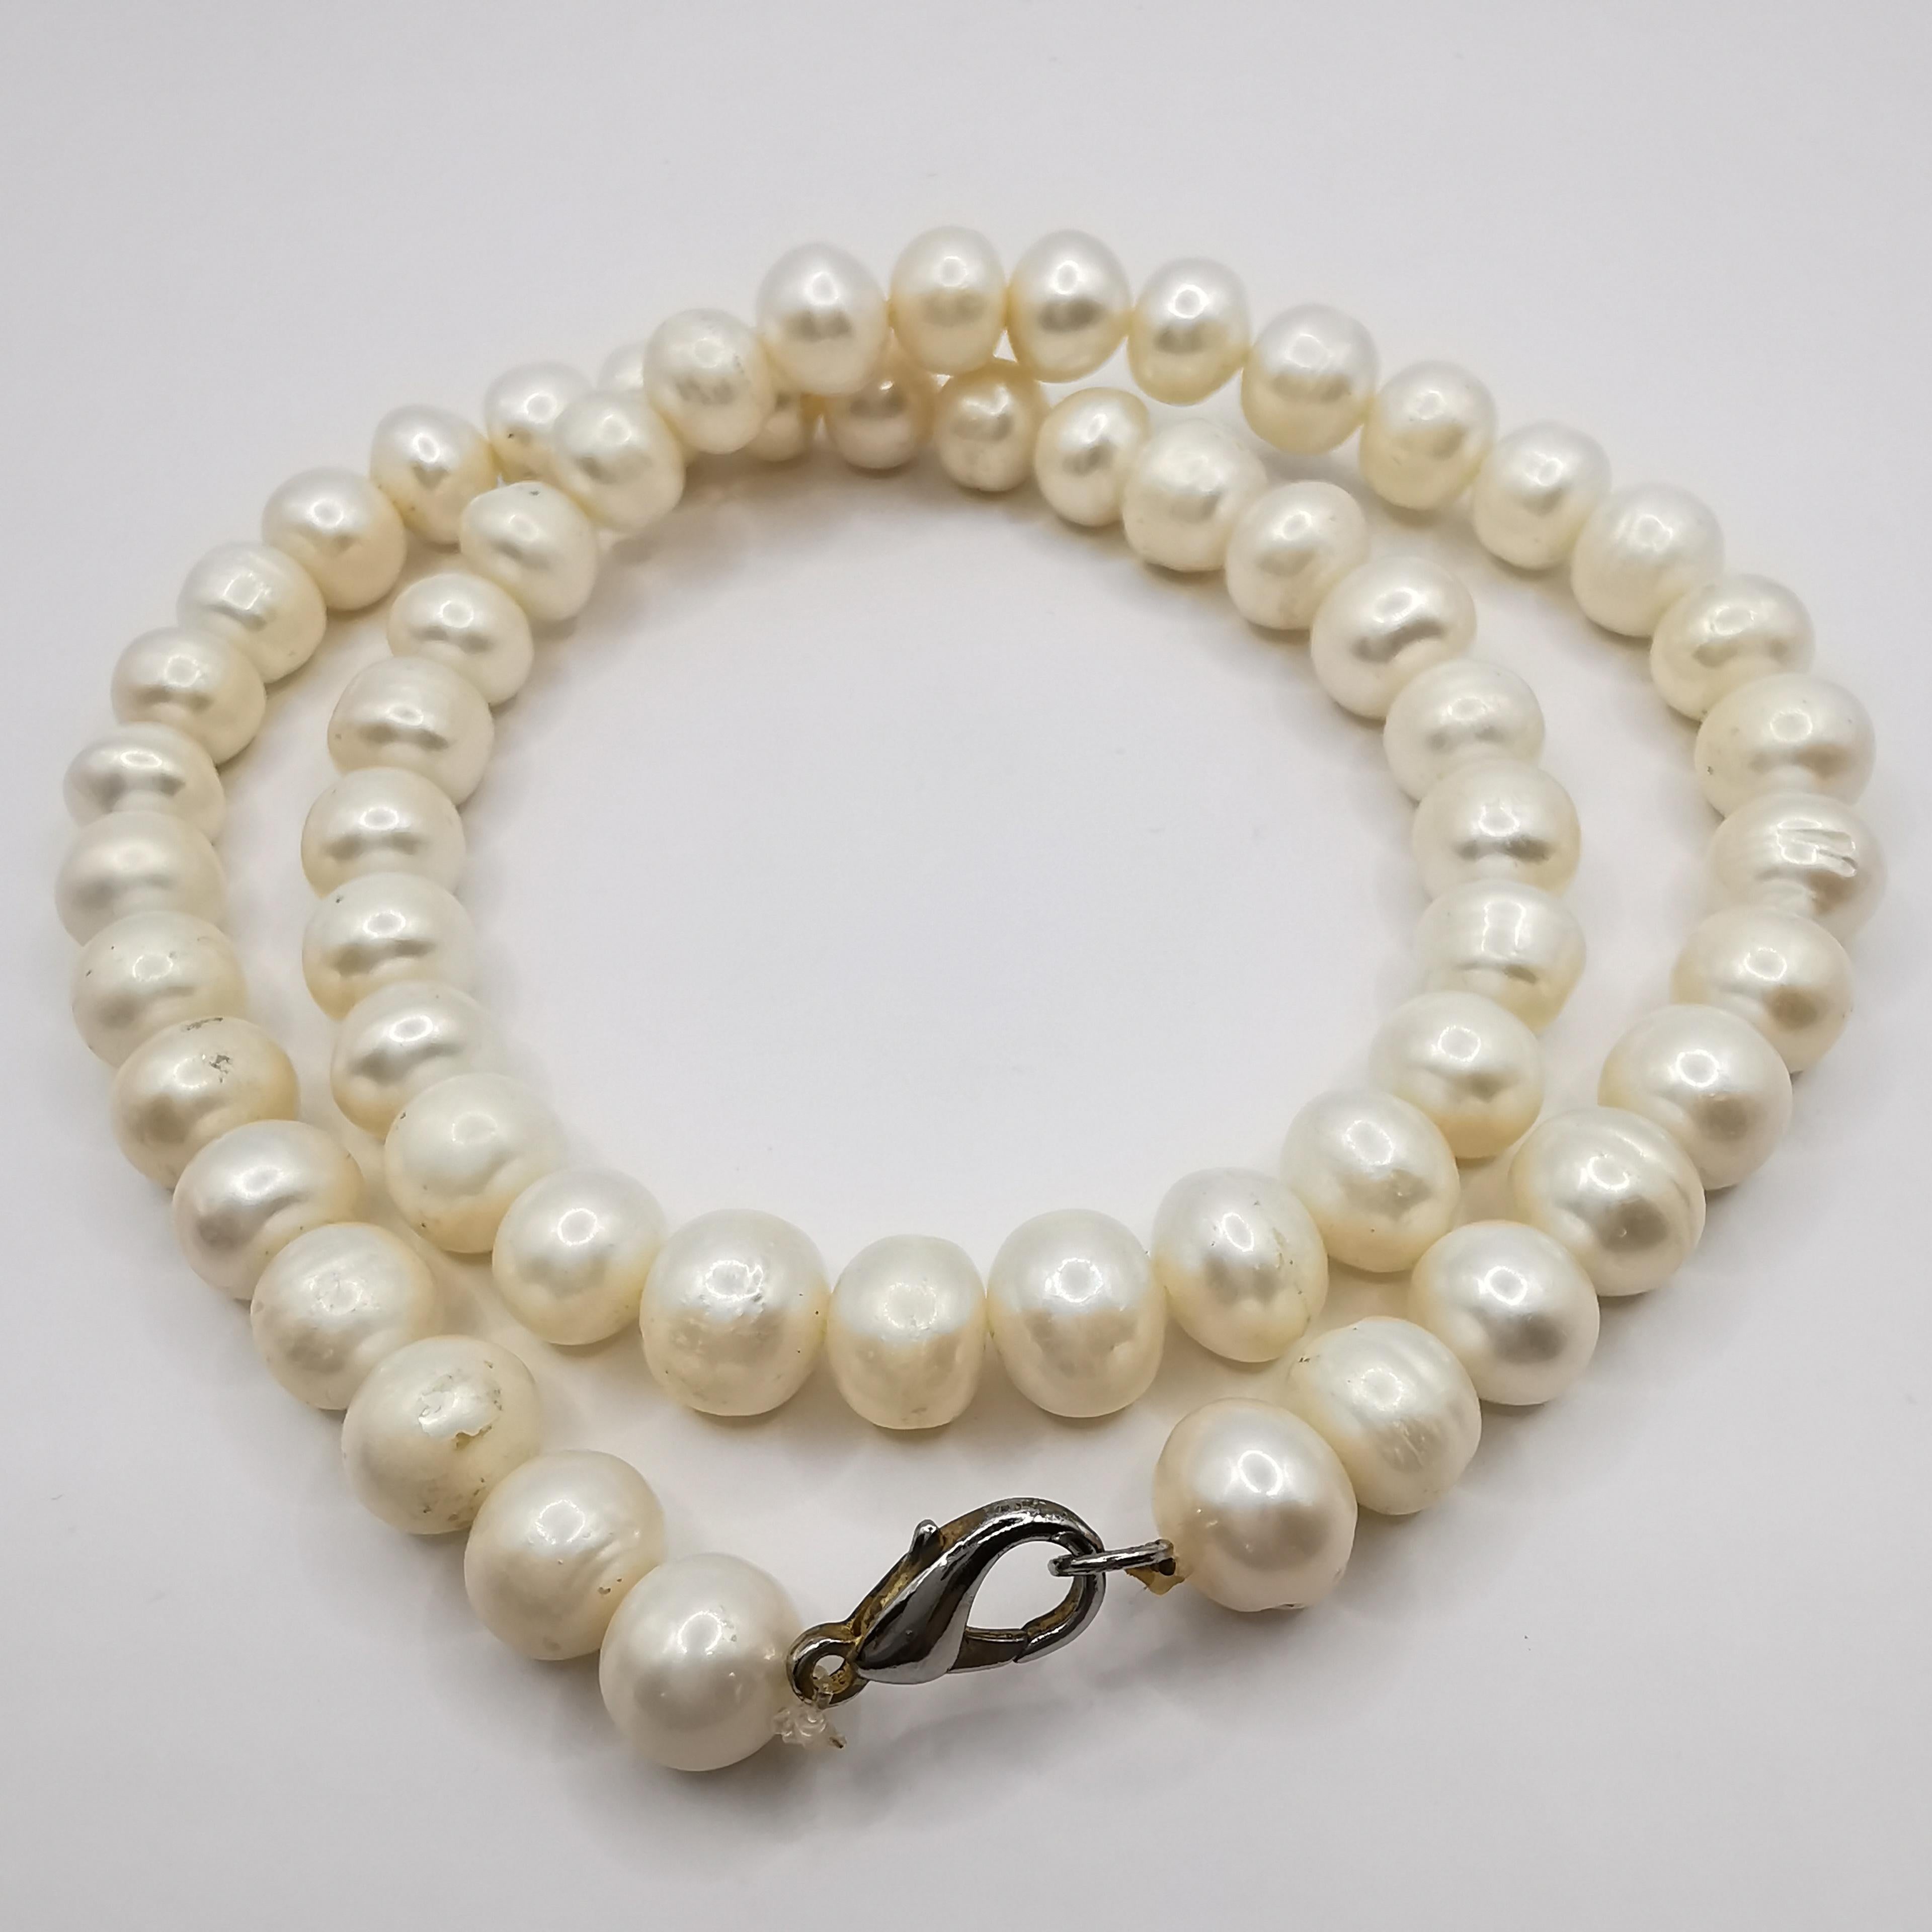 Cet élégant collier de 18 pouces comporte un rang de 58 perles de culture d'eau douce (8,5-10 mm), confortablement fixé par un fermoir de type homard. Un accessoire parfait pour toutes les occasions.

8.5-10mm Perles d'eau douce cultivées
Quantité :